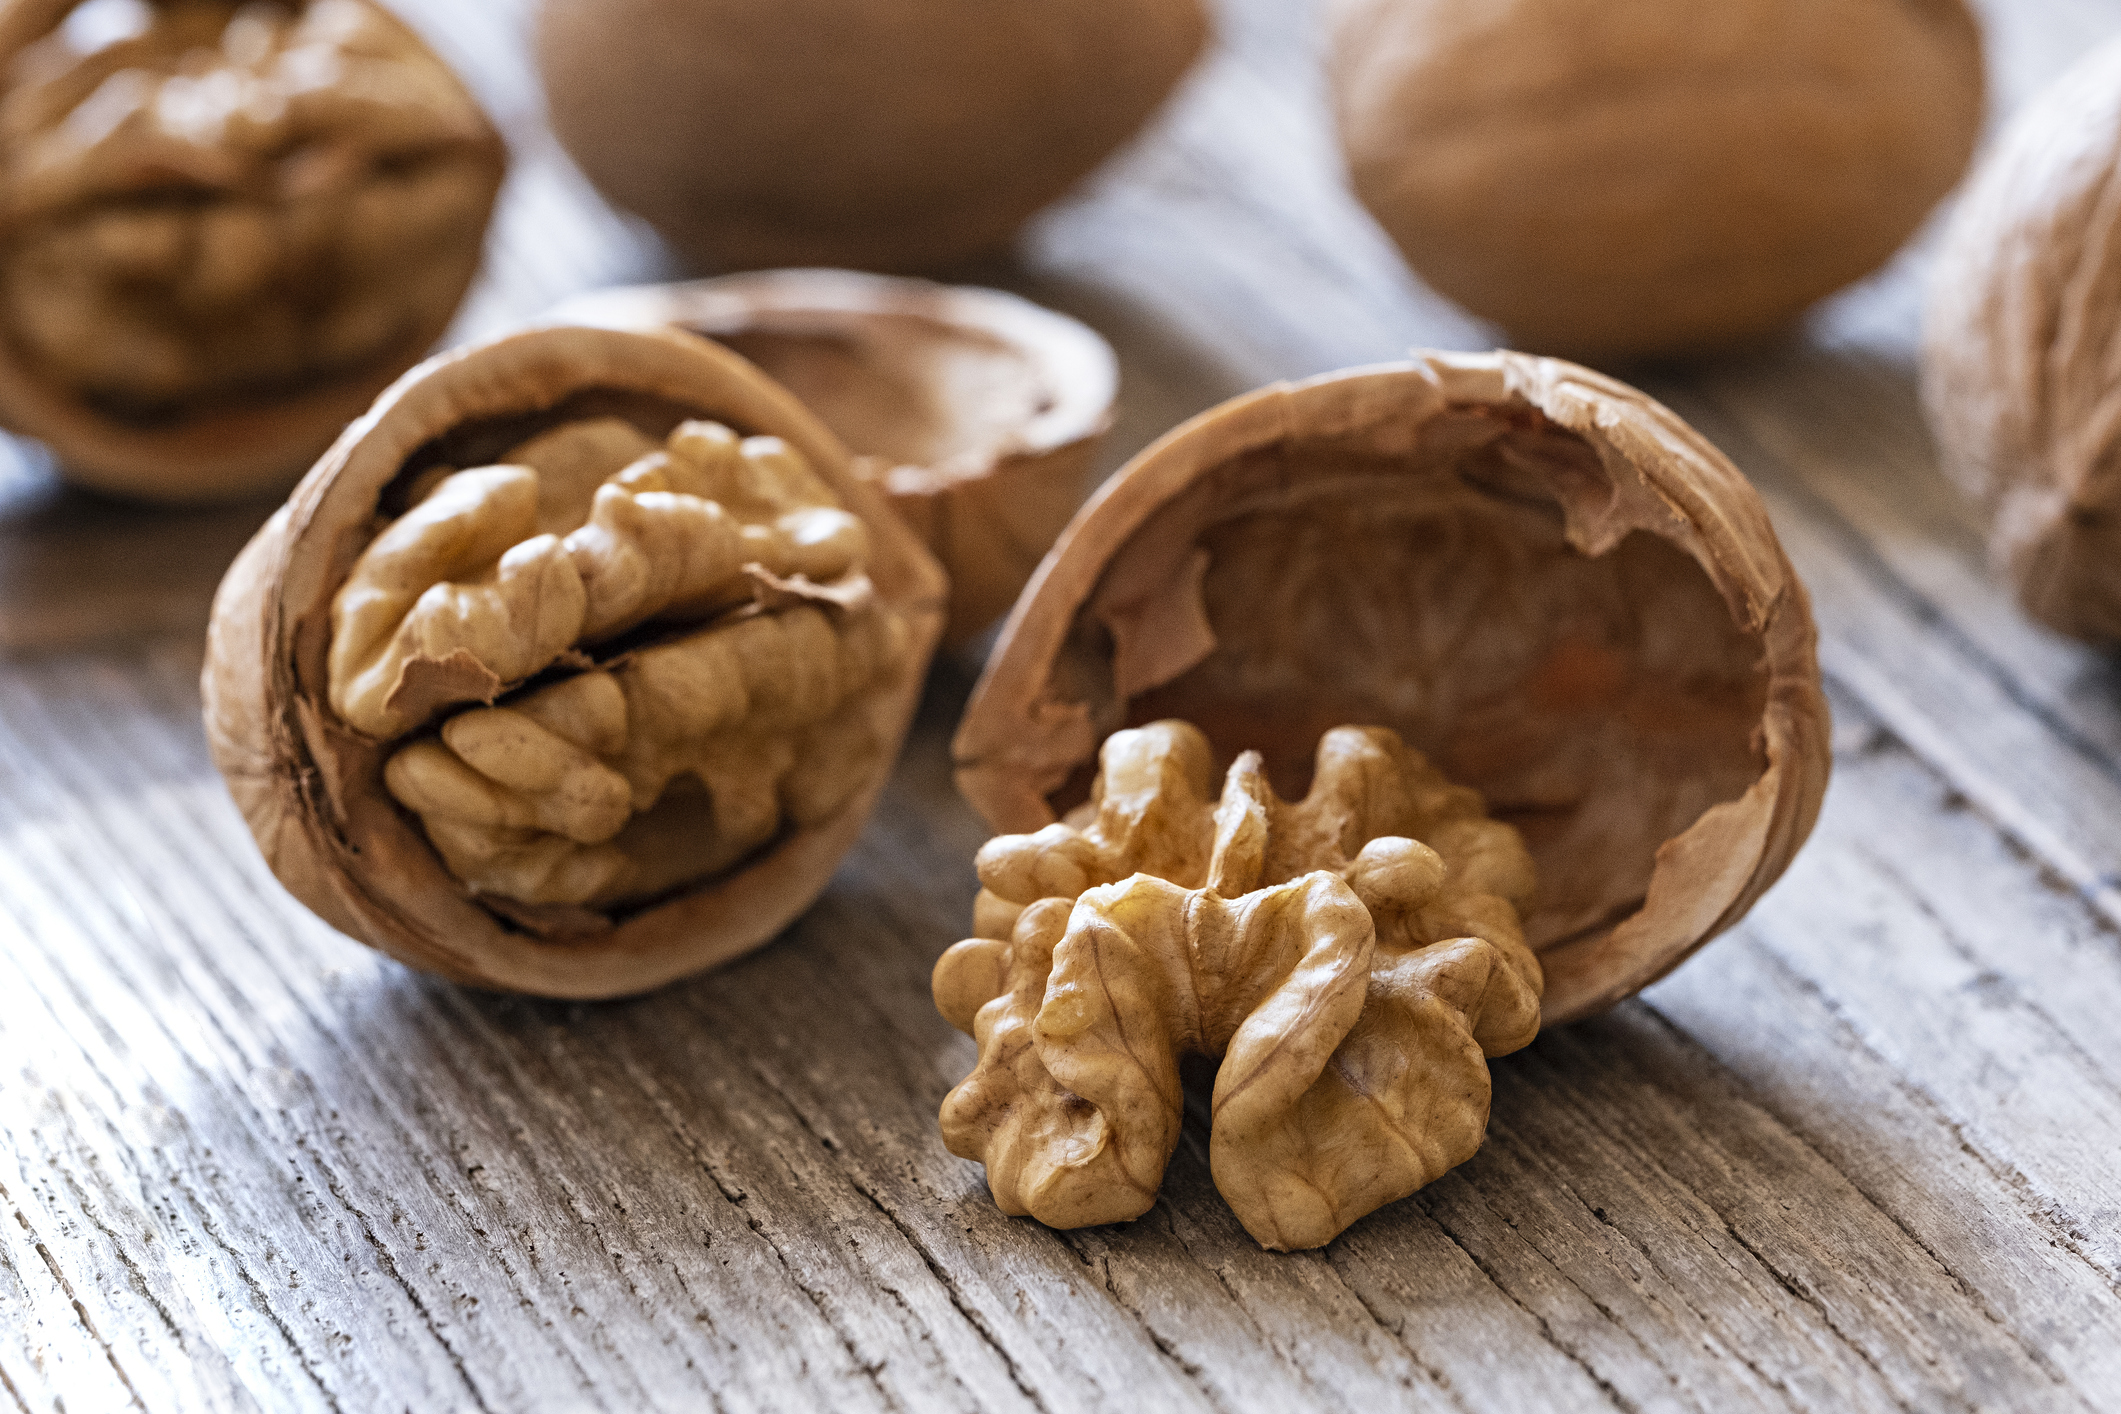 Los vegetarianos pueden encontrar esta sustancia en nueces y semillas, según enumeraron los expertos
(Getty Images)